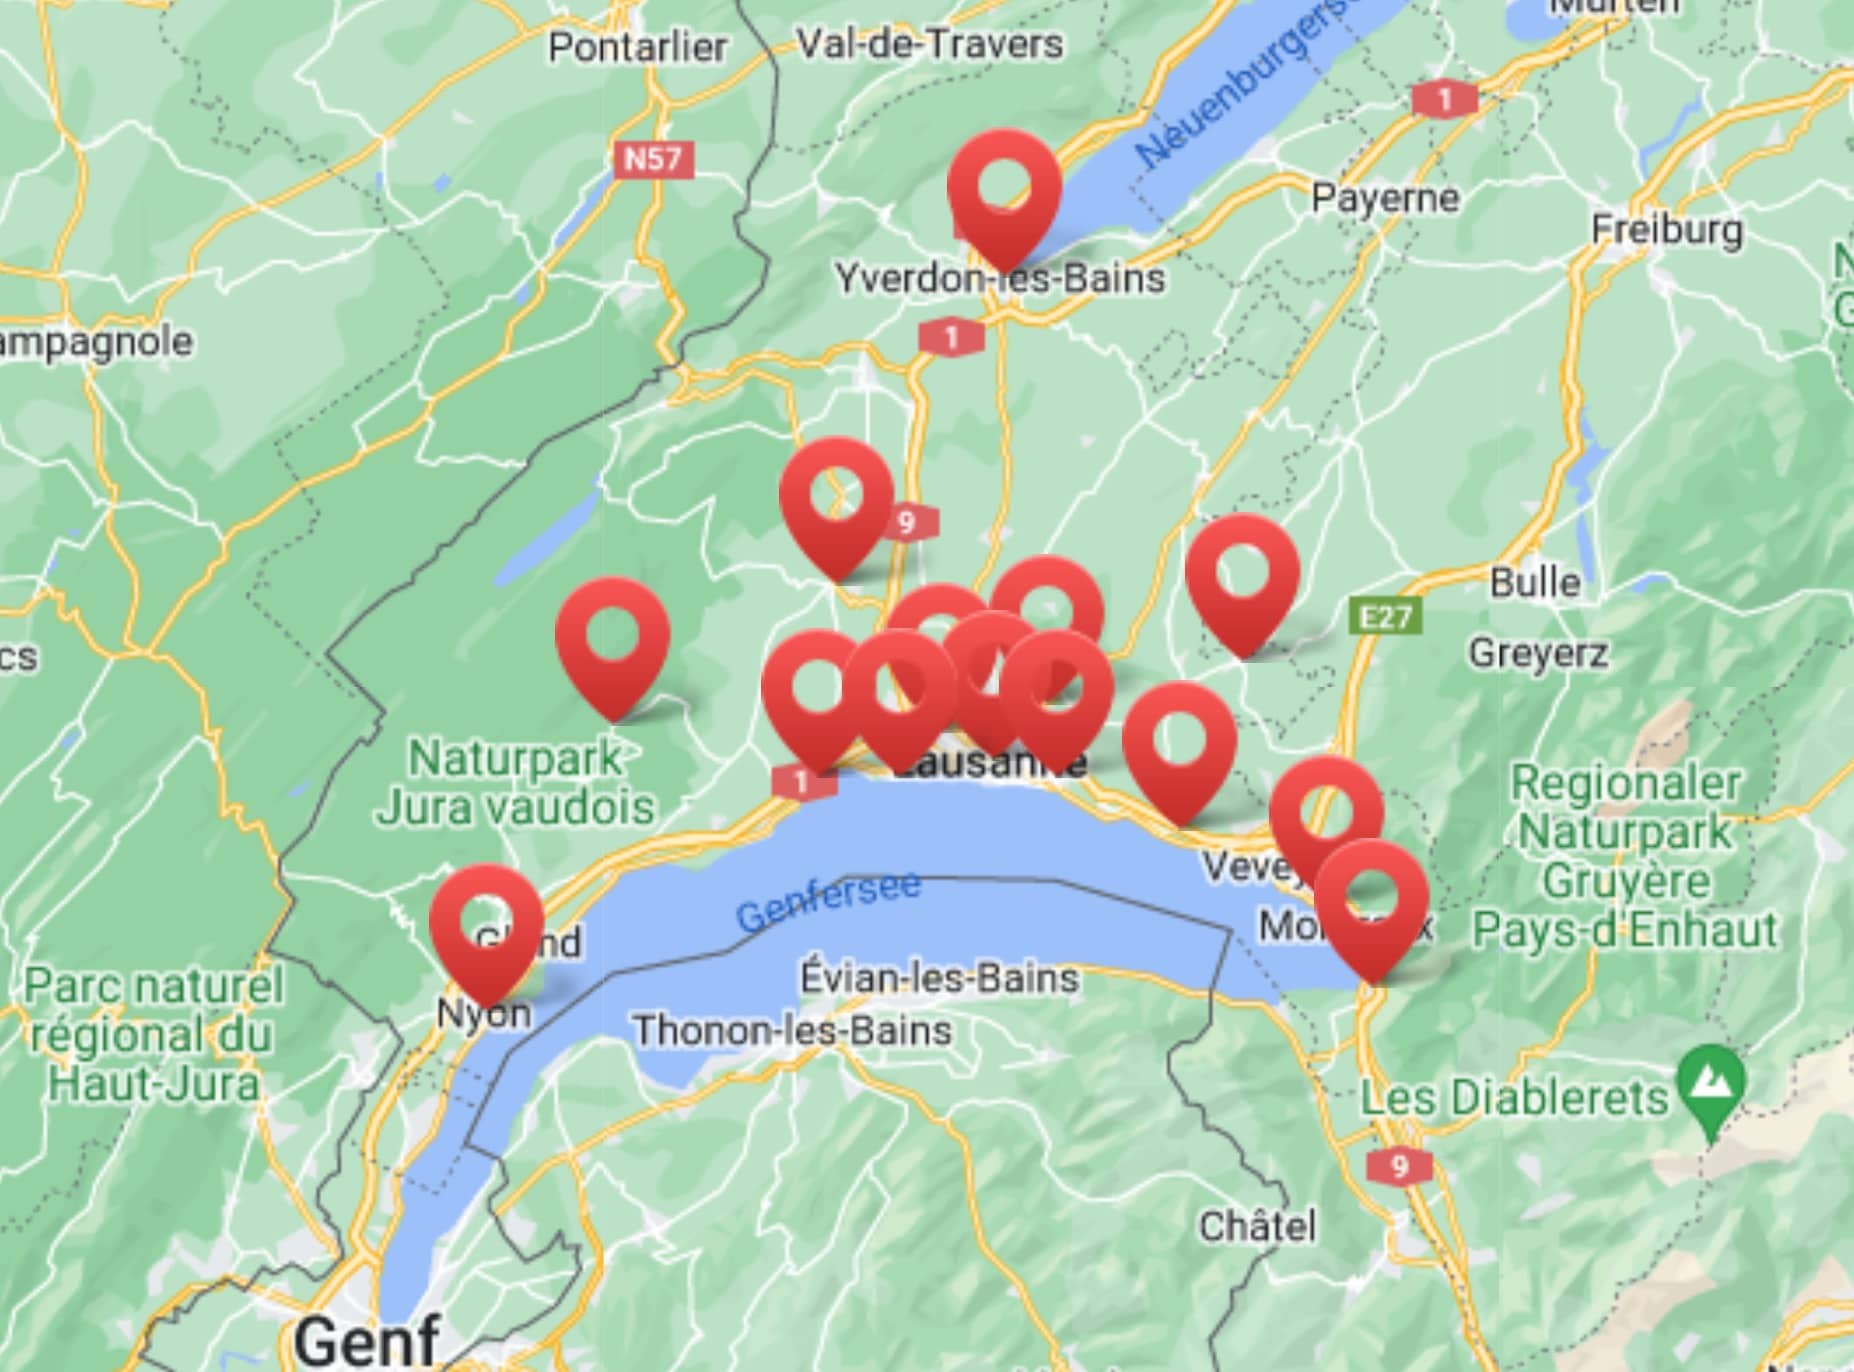 Carte du canton de Vaud avec les points où ducommun menuisiers réalisent des travaux de menuiserie